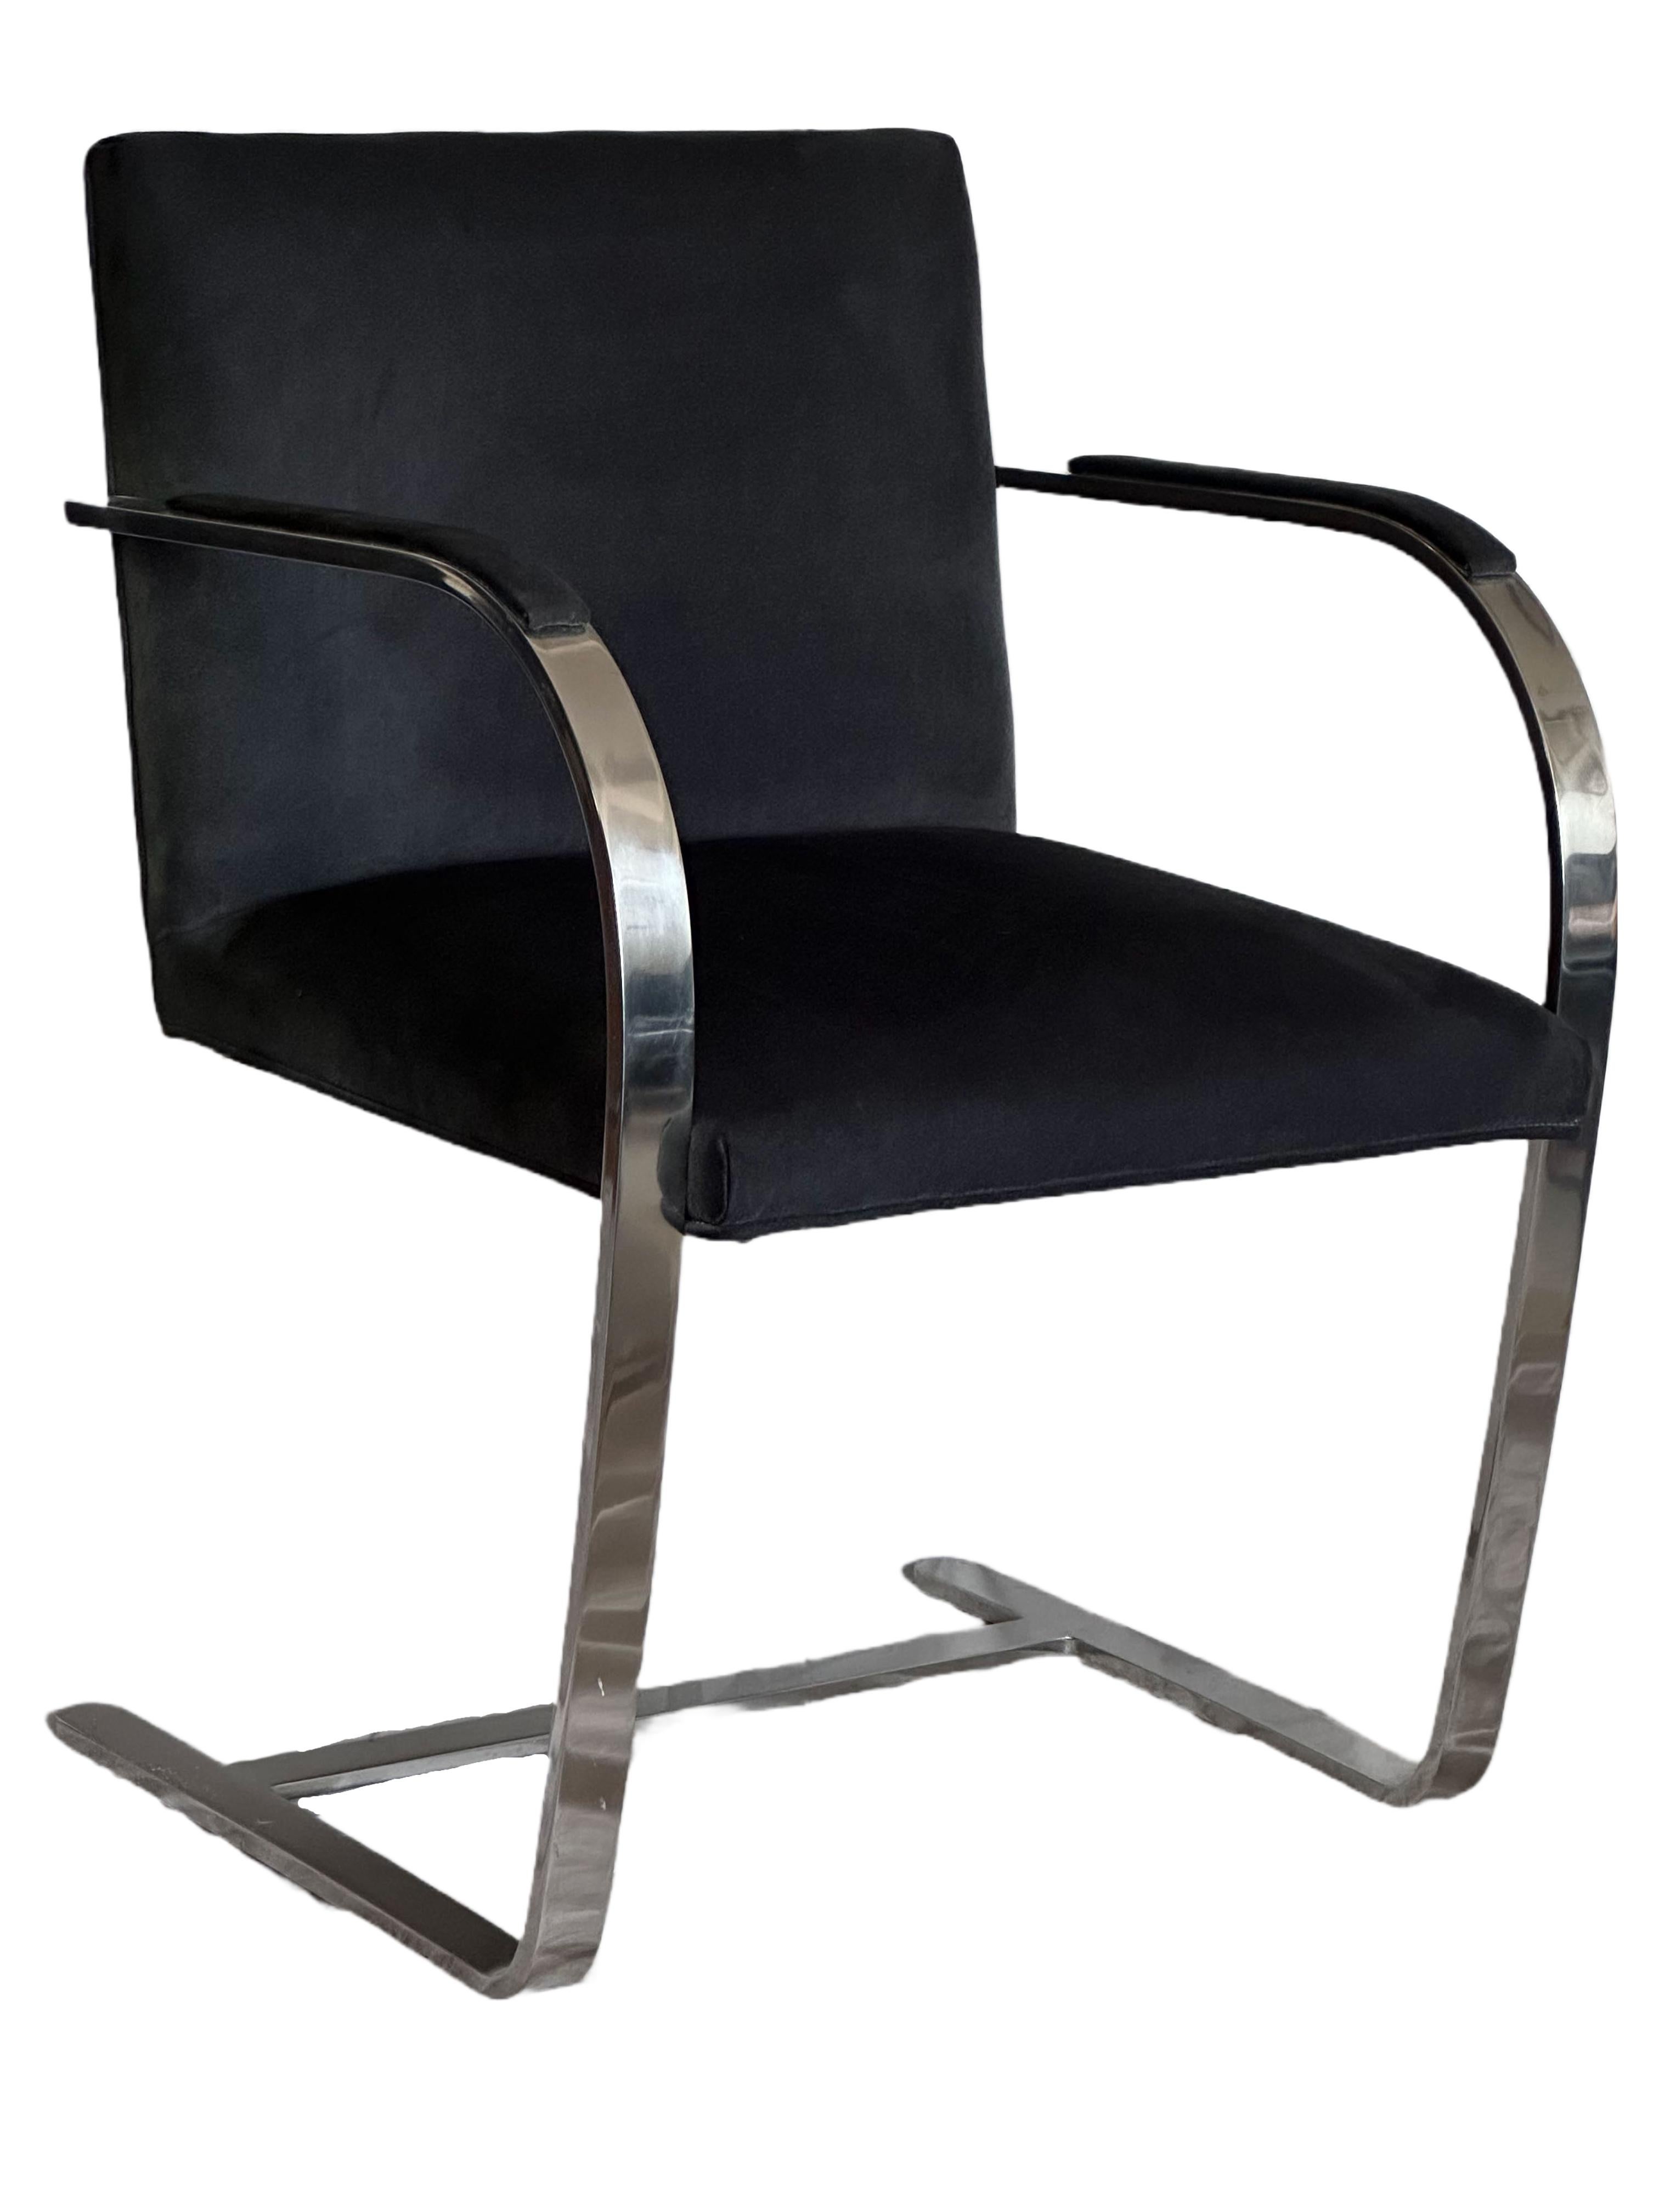 Il s'agit d'une paire vintage de l'emblématique chaise BRNO (modèle 255) conçue par Mies van der Rohe pour Knoll.

Le cadre à barre plate est en chrome poli (plaqué), et le siège est en daim noir d'époque. Les chaises sont à peine utilisées et en